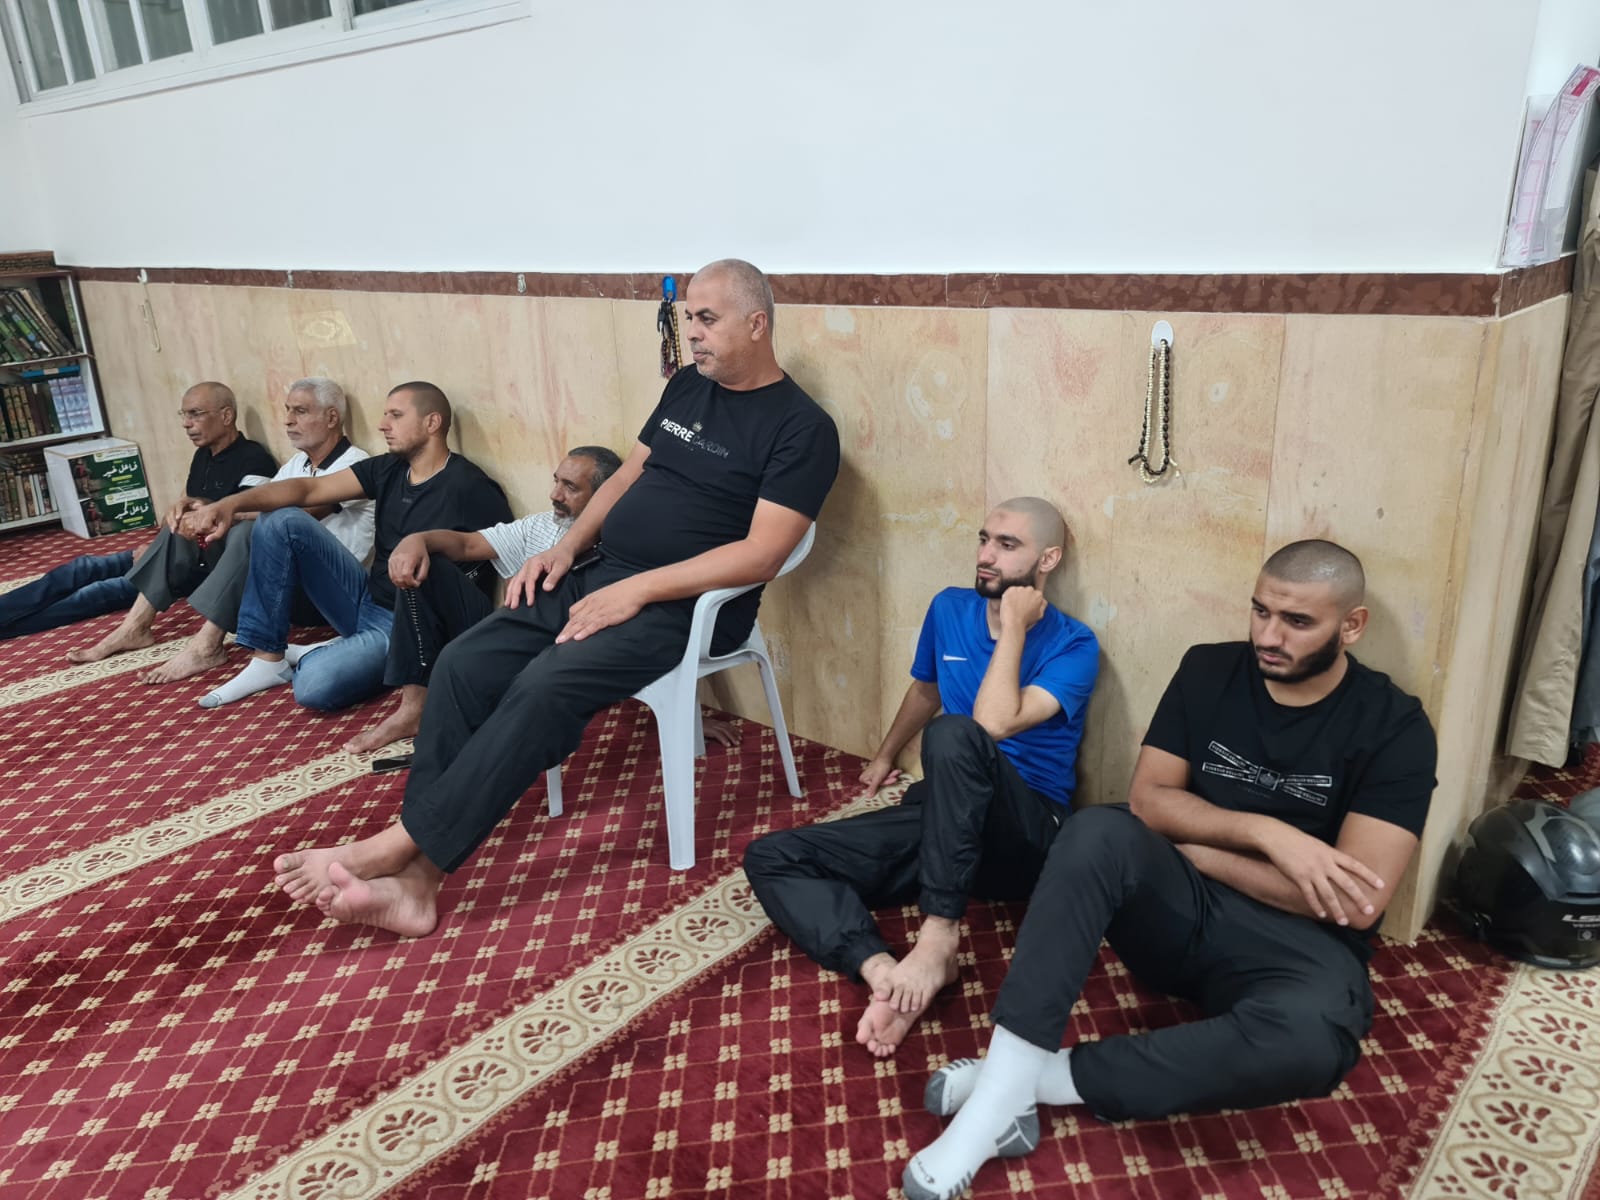 يافا: الشيخ محمد محاميد يحل ضيفا على مجالس النور في مسجد العجمي